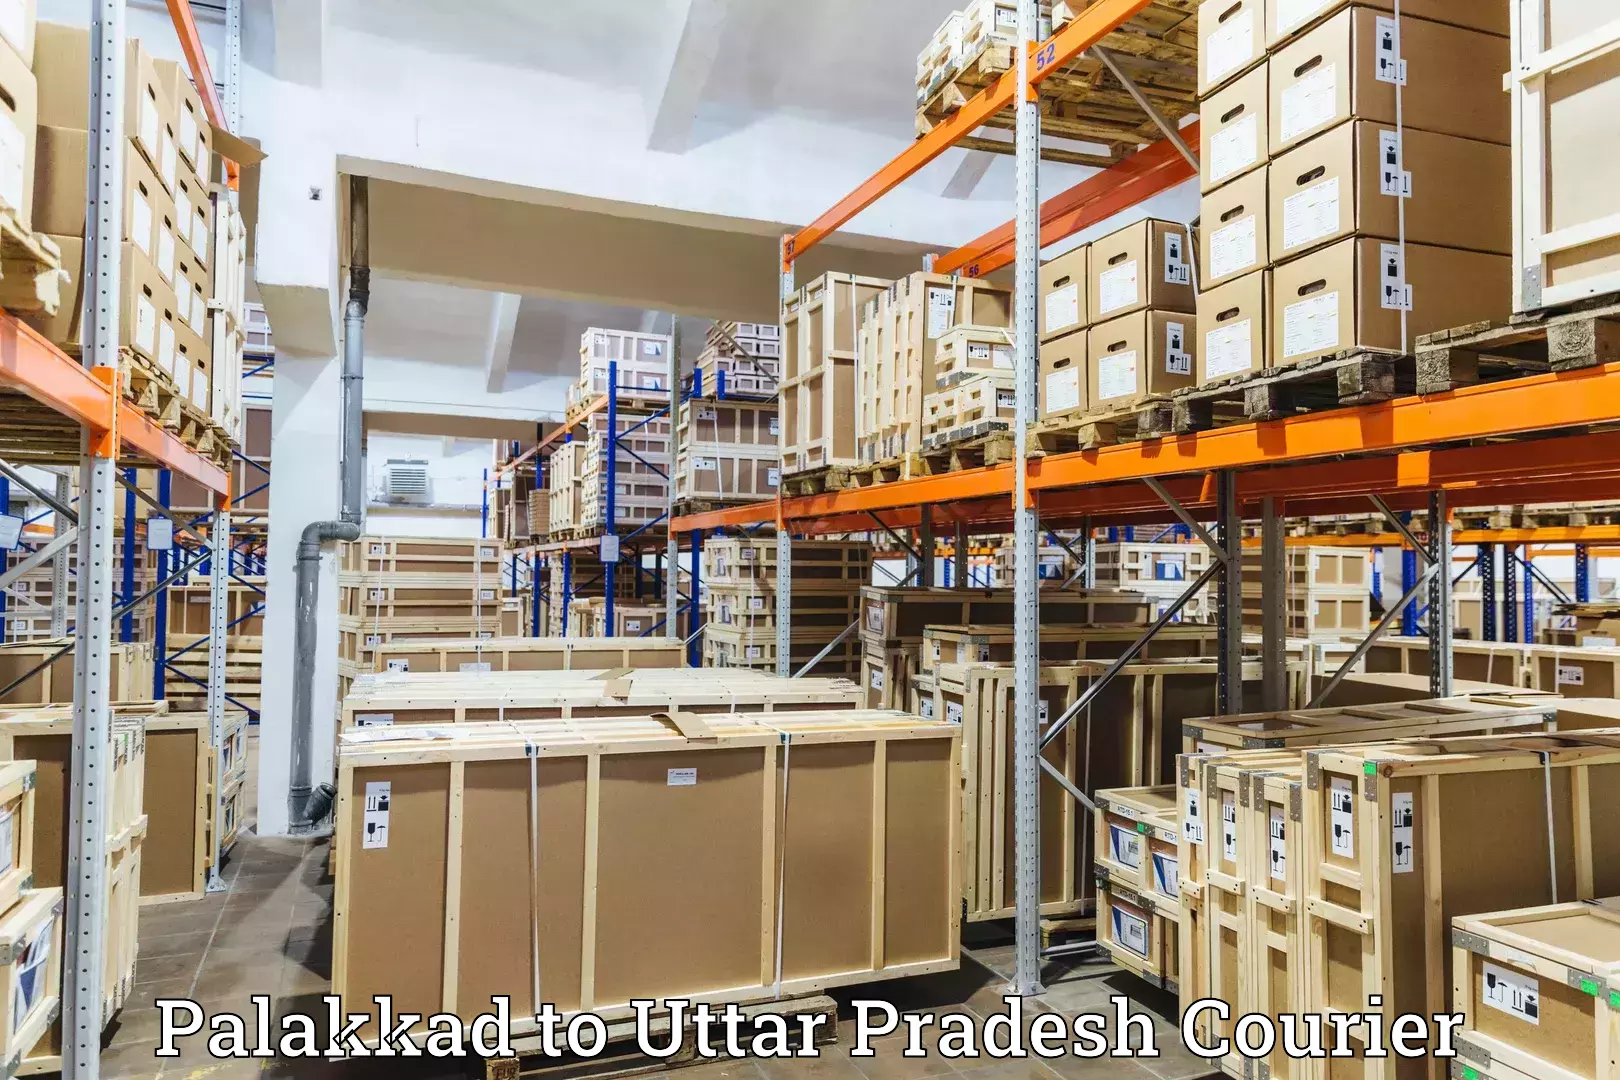 Multi-city courier Palakkad to Uttar Pradesh